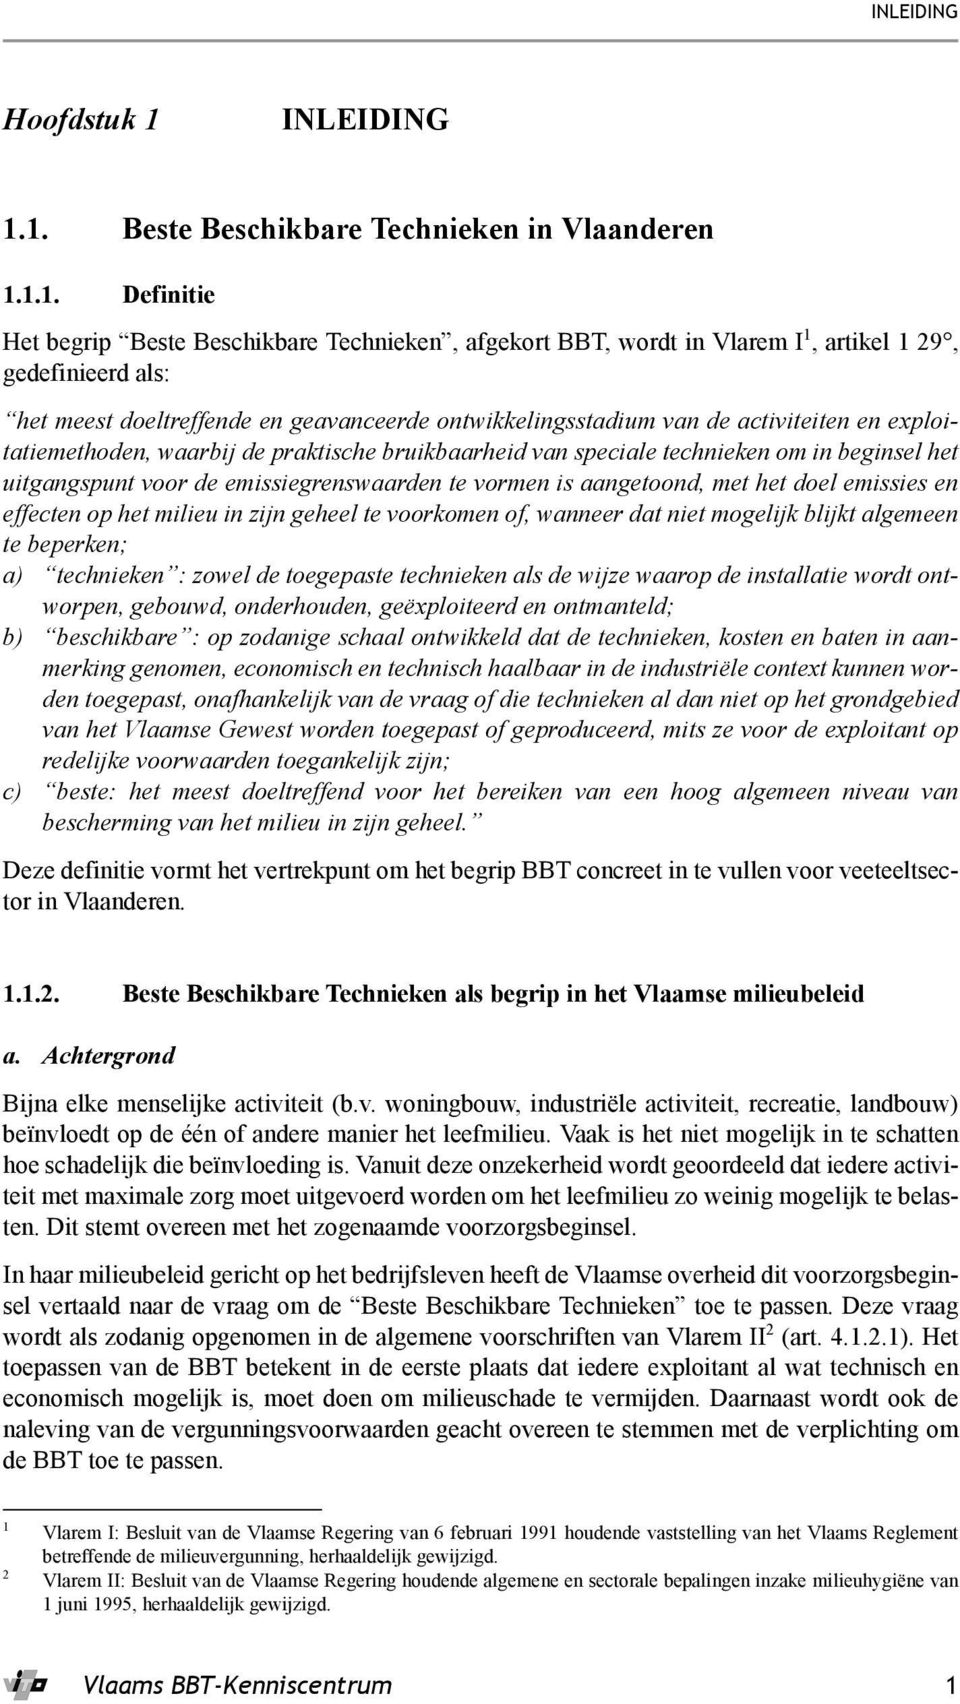 1. Beste Beschikbare Technieken in Vlaanderen 1.1.1. Definitie Het begrip Beste Beschikbare Technieken, afgekort BBT, wordt in Vlarem I 1, artikel 1 29, gedefinieerd als: het meest doeltreffende en